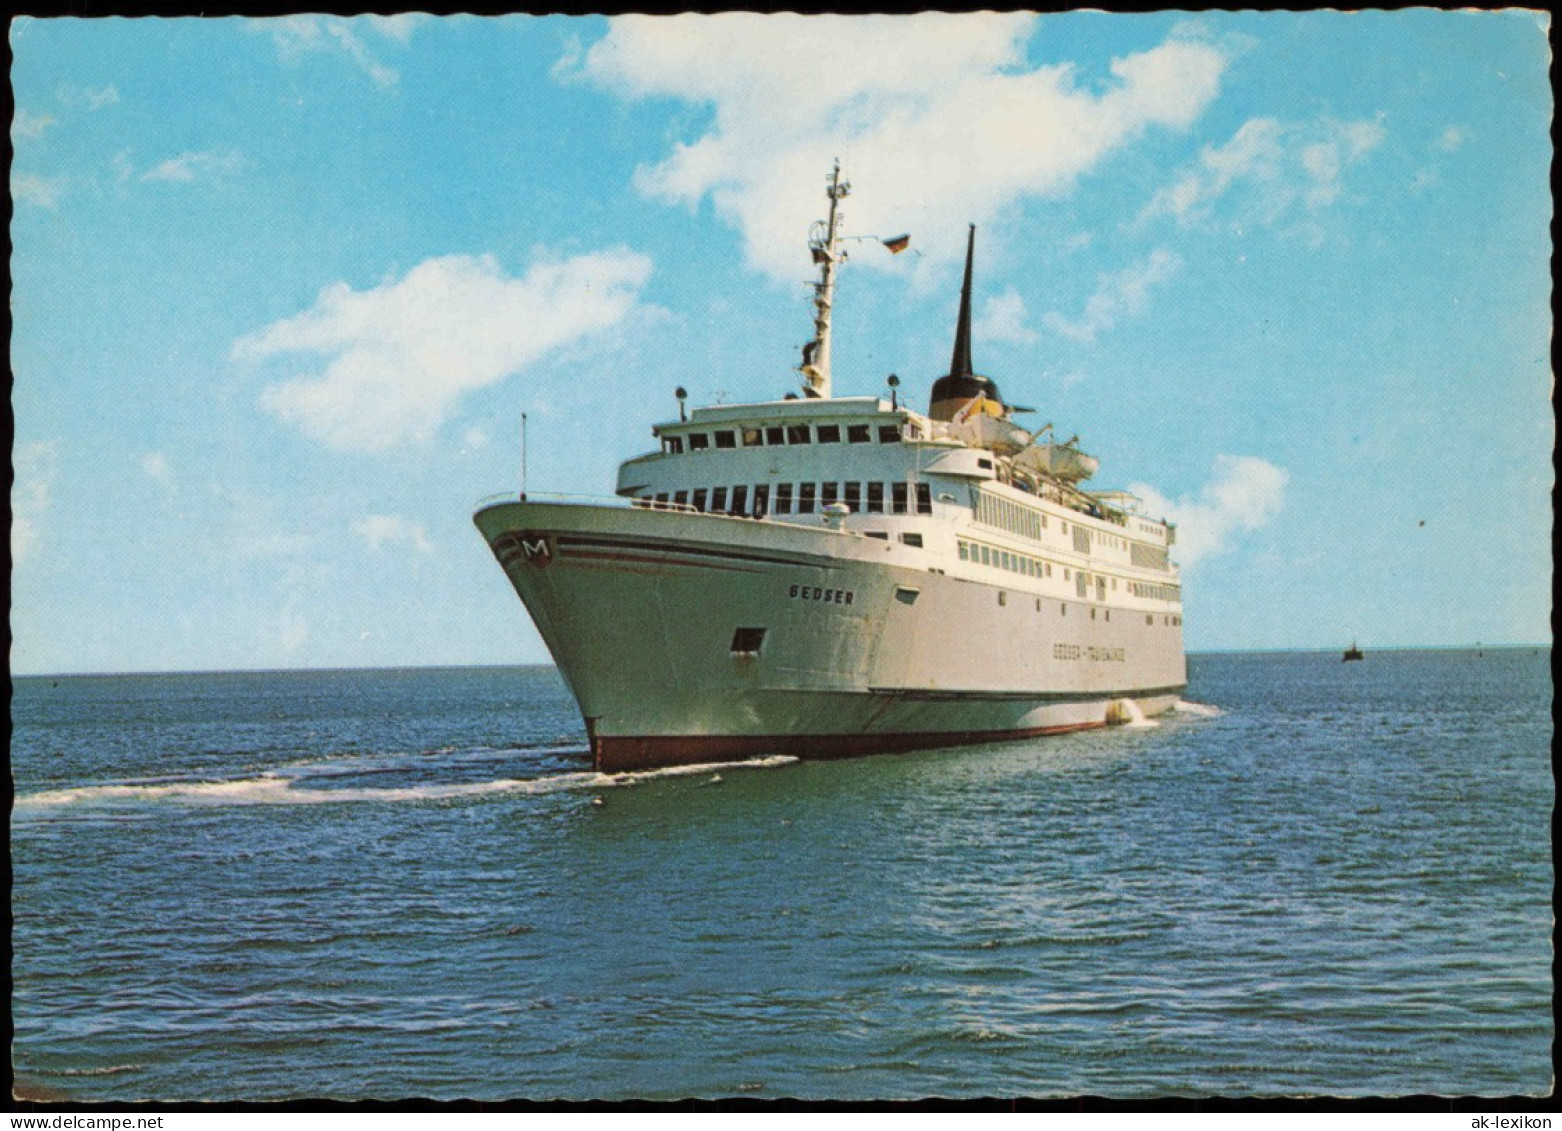 Ansichtskarte  Fahrgastschiffe Personenschiffahrt Færgen M/F ,,Gedser" 1978 - Fähren